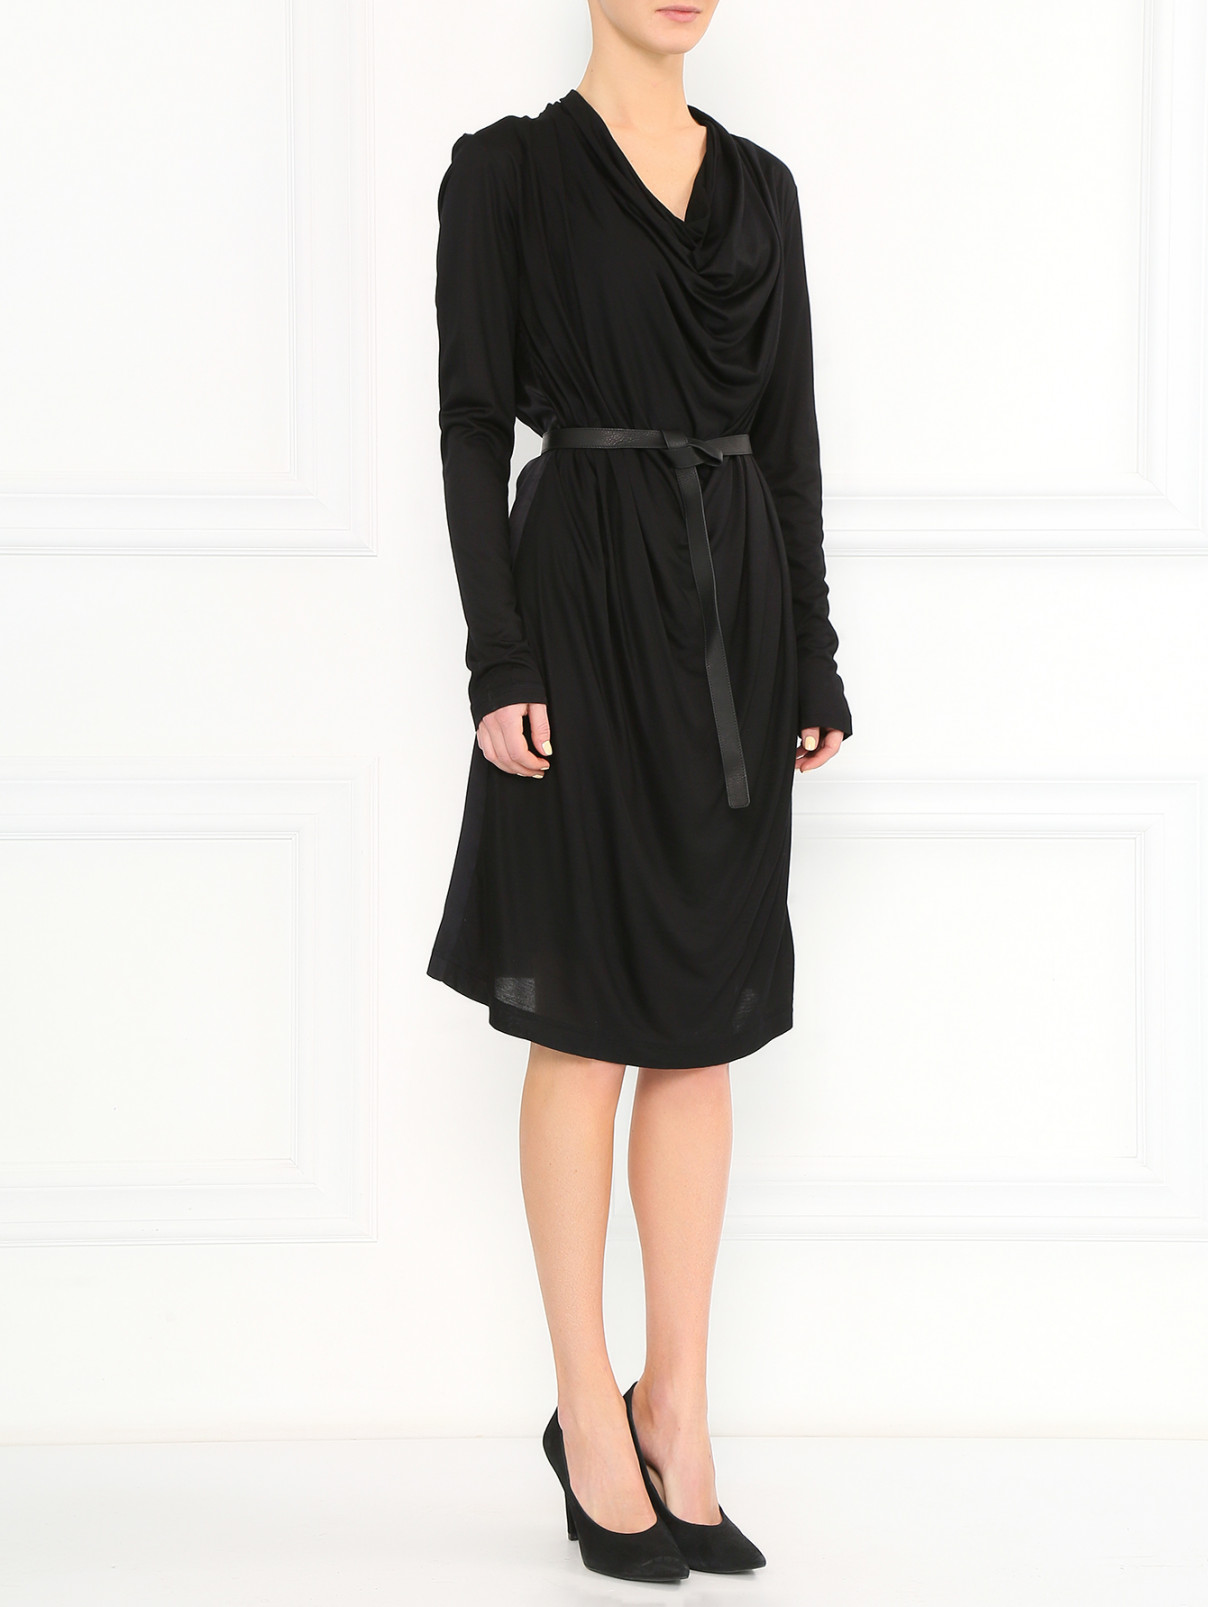 Платье свободного кроя с поясом из кожи Strenesse  –  Модель Общий вид  – Цвет:  Черный